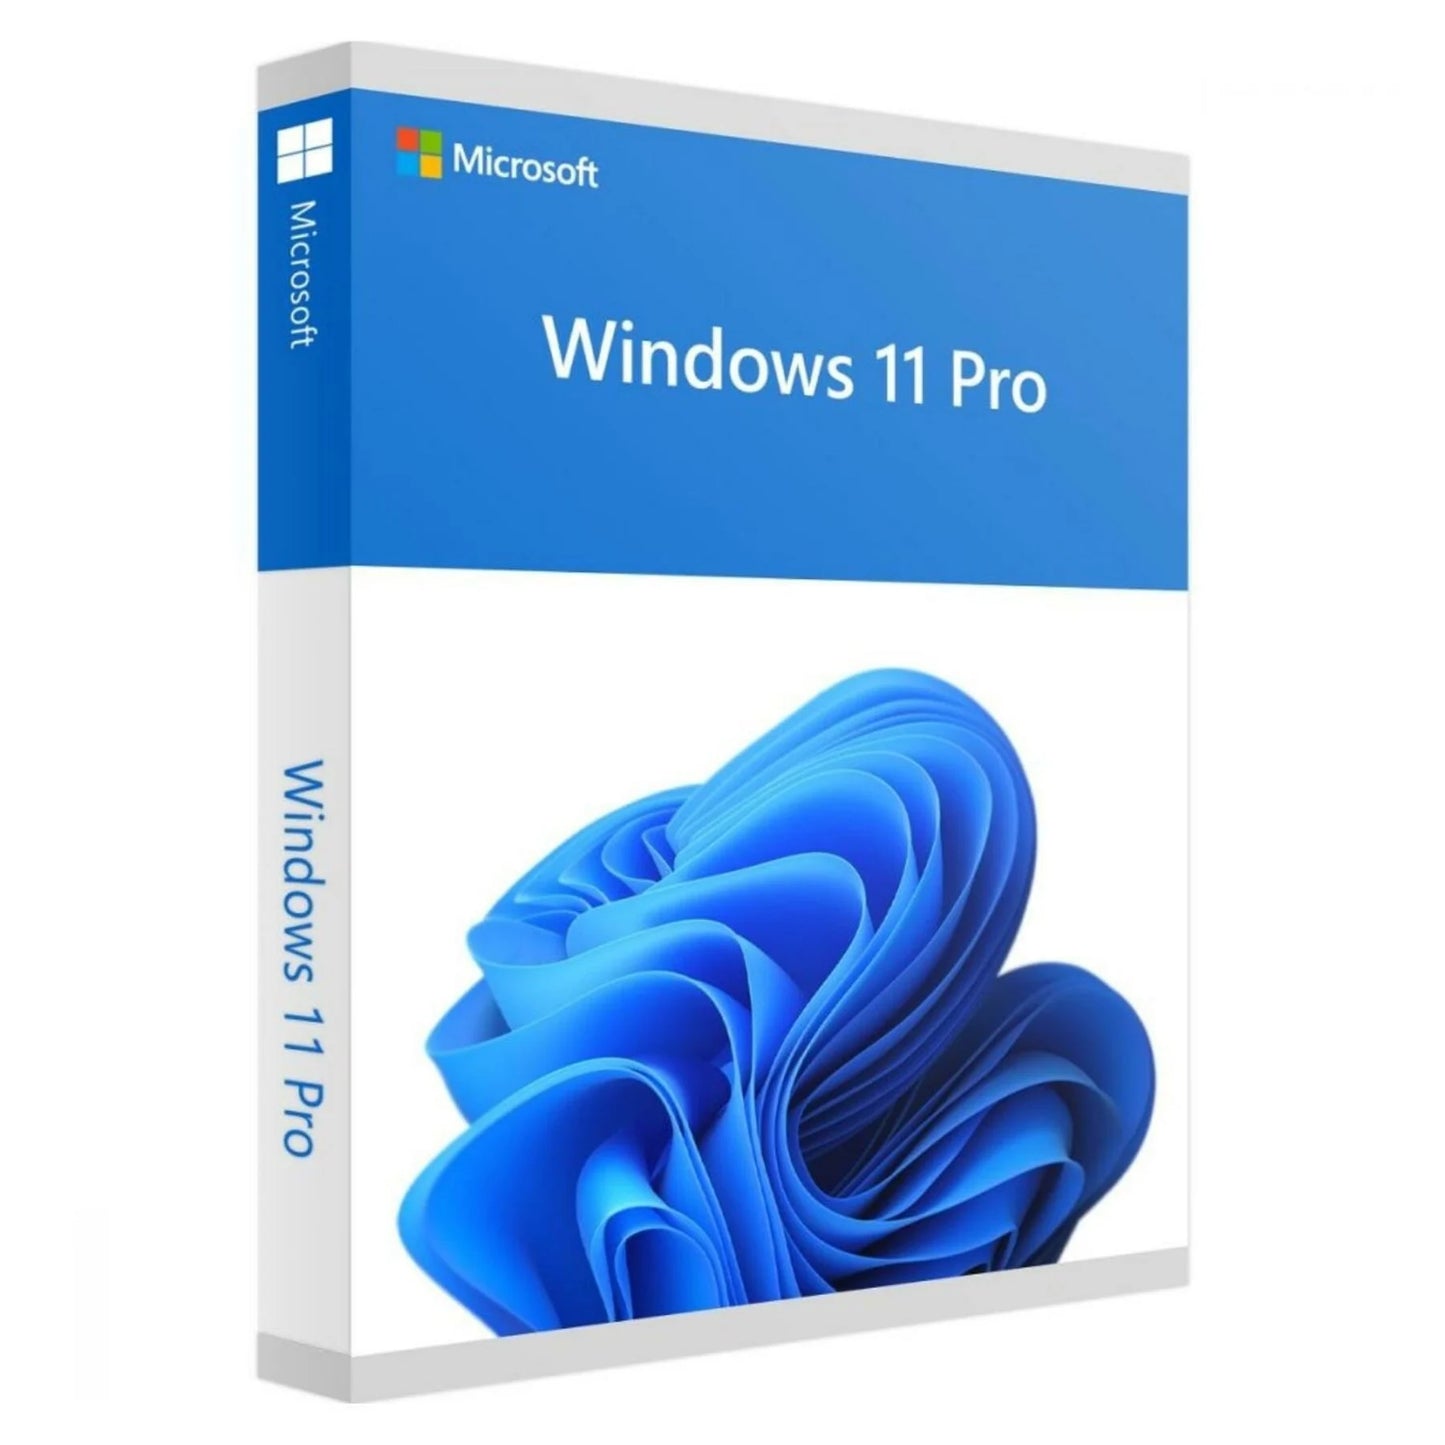 Windows 11 Pro ist das neue Betriebssystem von Microsoft, das speziell für Unternehmen und professionelle Anwender entwickelt wurde. Es bietet zahlreiche innovative Funktionen und Verbesserungen gegenüber seinem Vorgänger Windows 10.